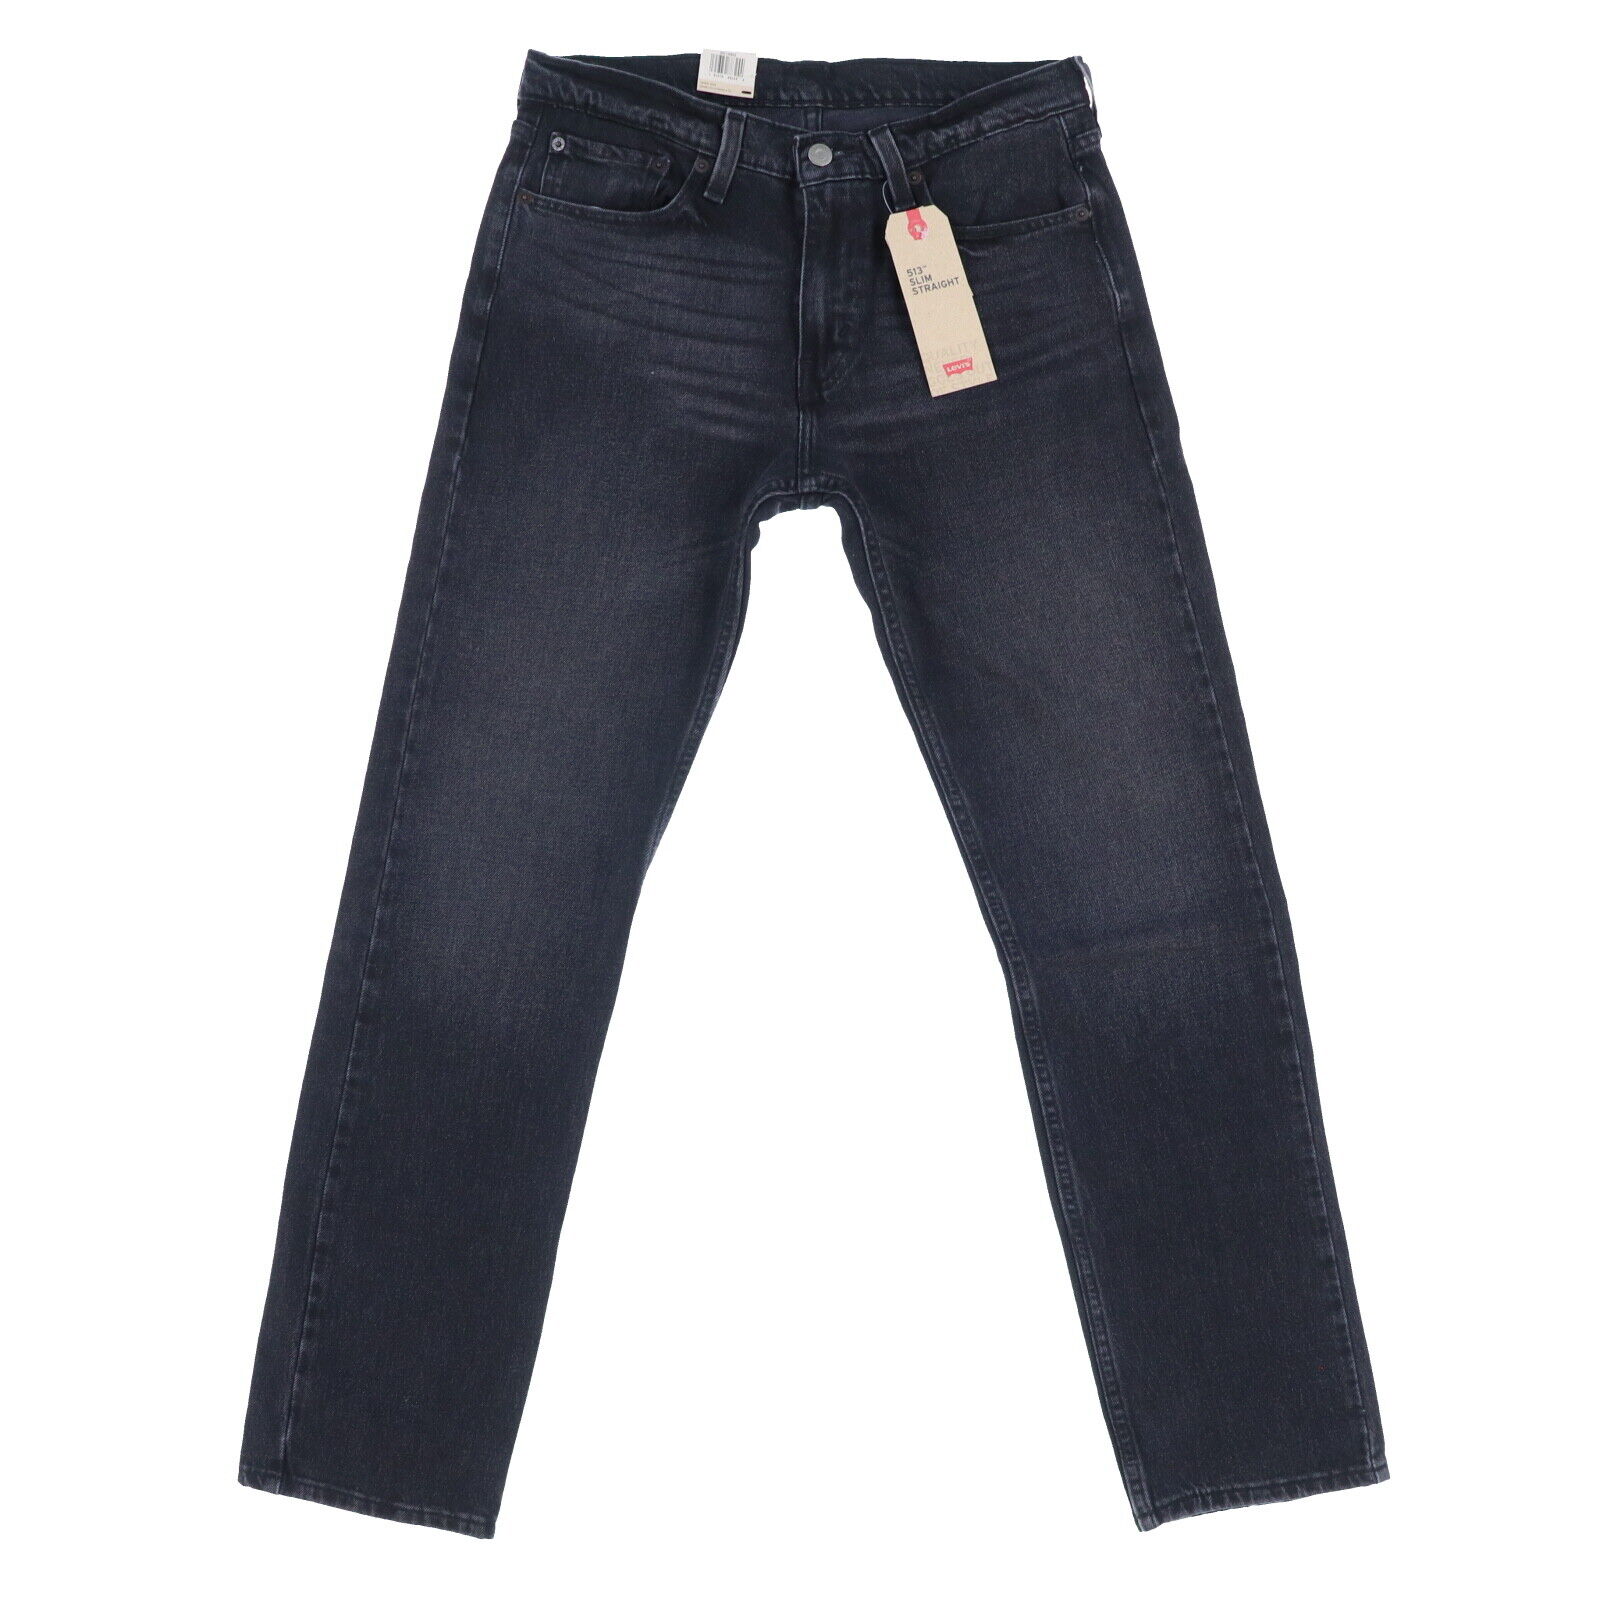 Levis 513 Jeans Mens Slim Straight Denim Bottoms Casual Pants Zipper ...